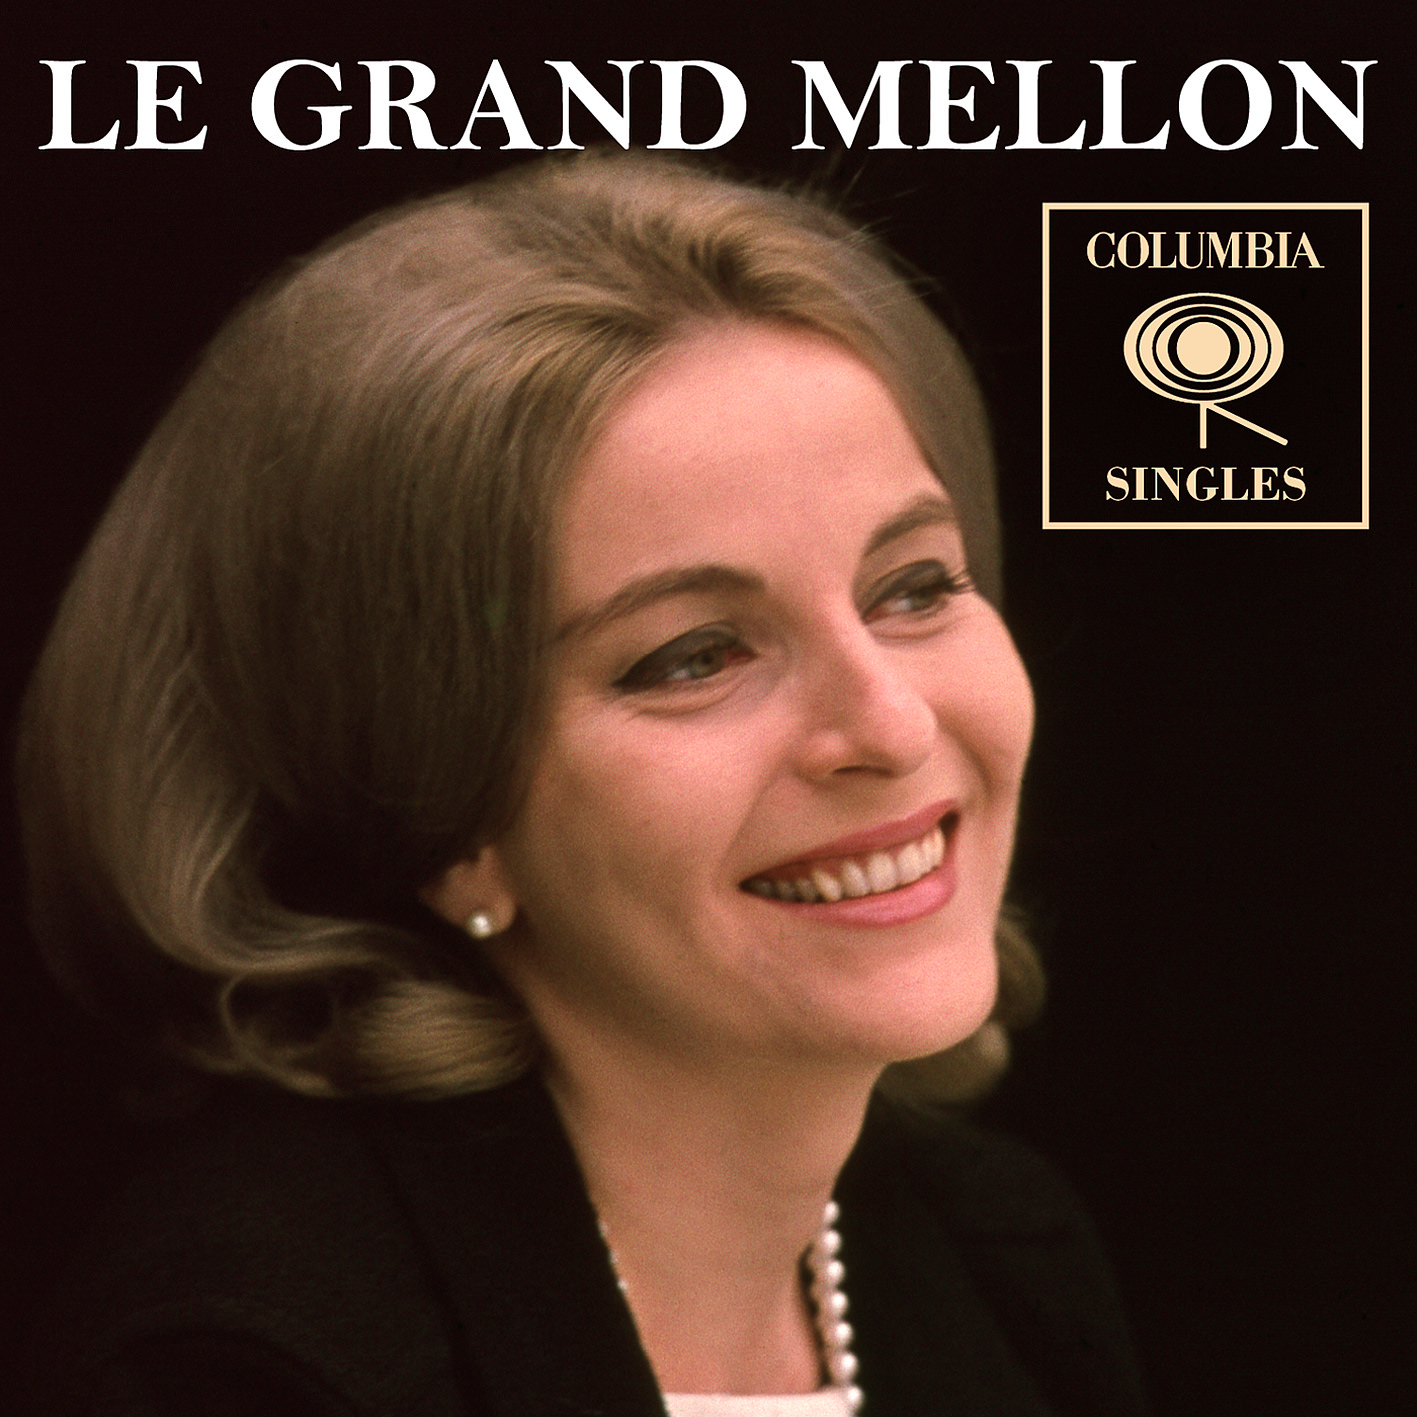 Le Grand Mellon – Columbia Singles (2017) [AcousticSounds FLAC 24bit/192kHz]